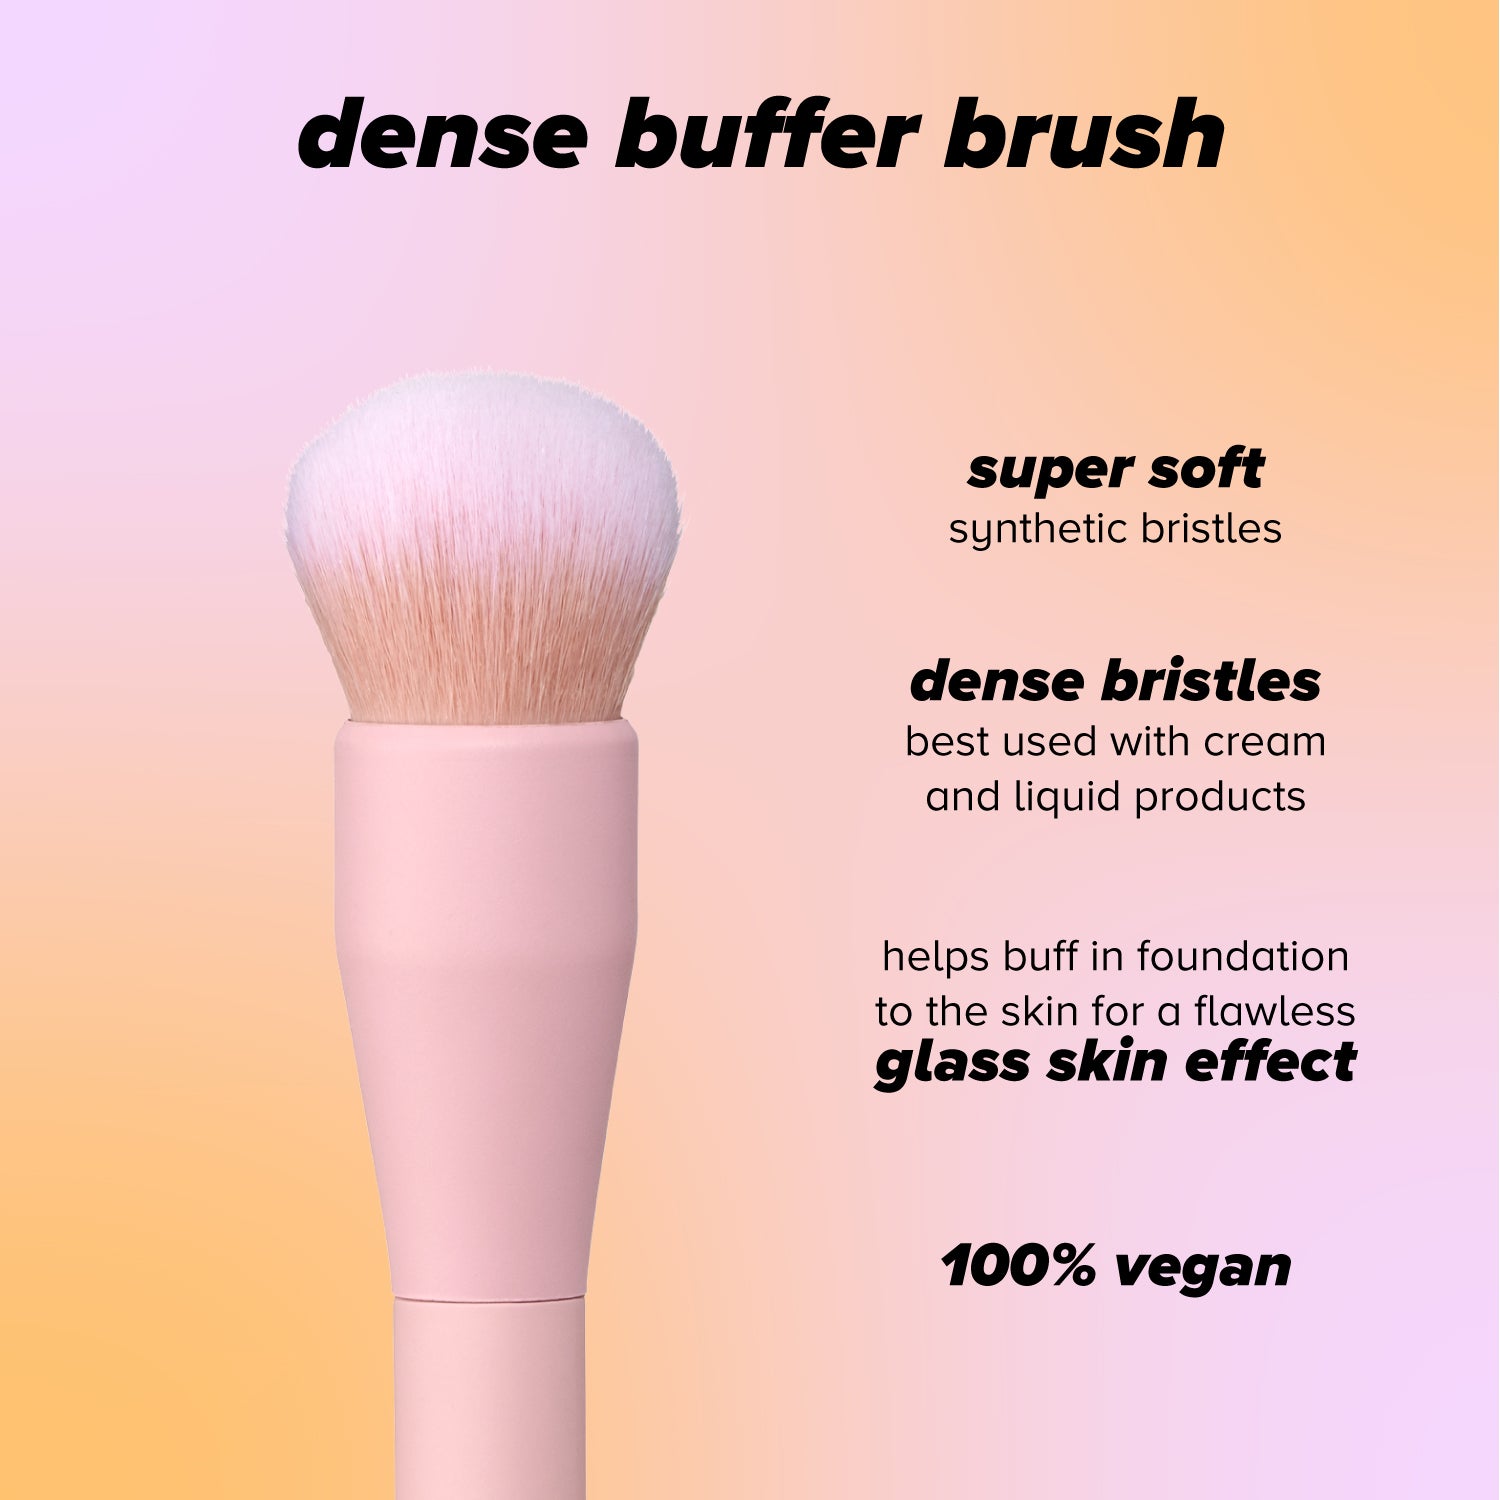 dense buffer brush